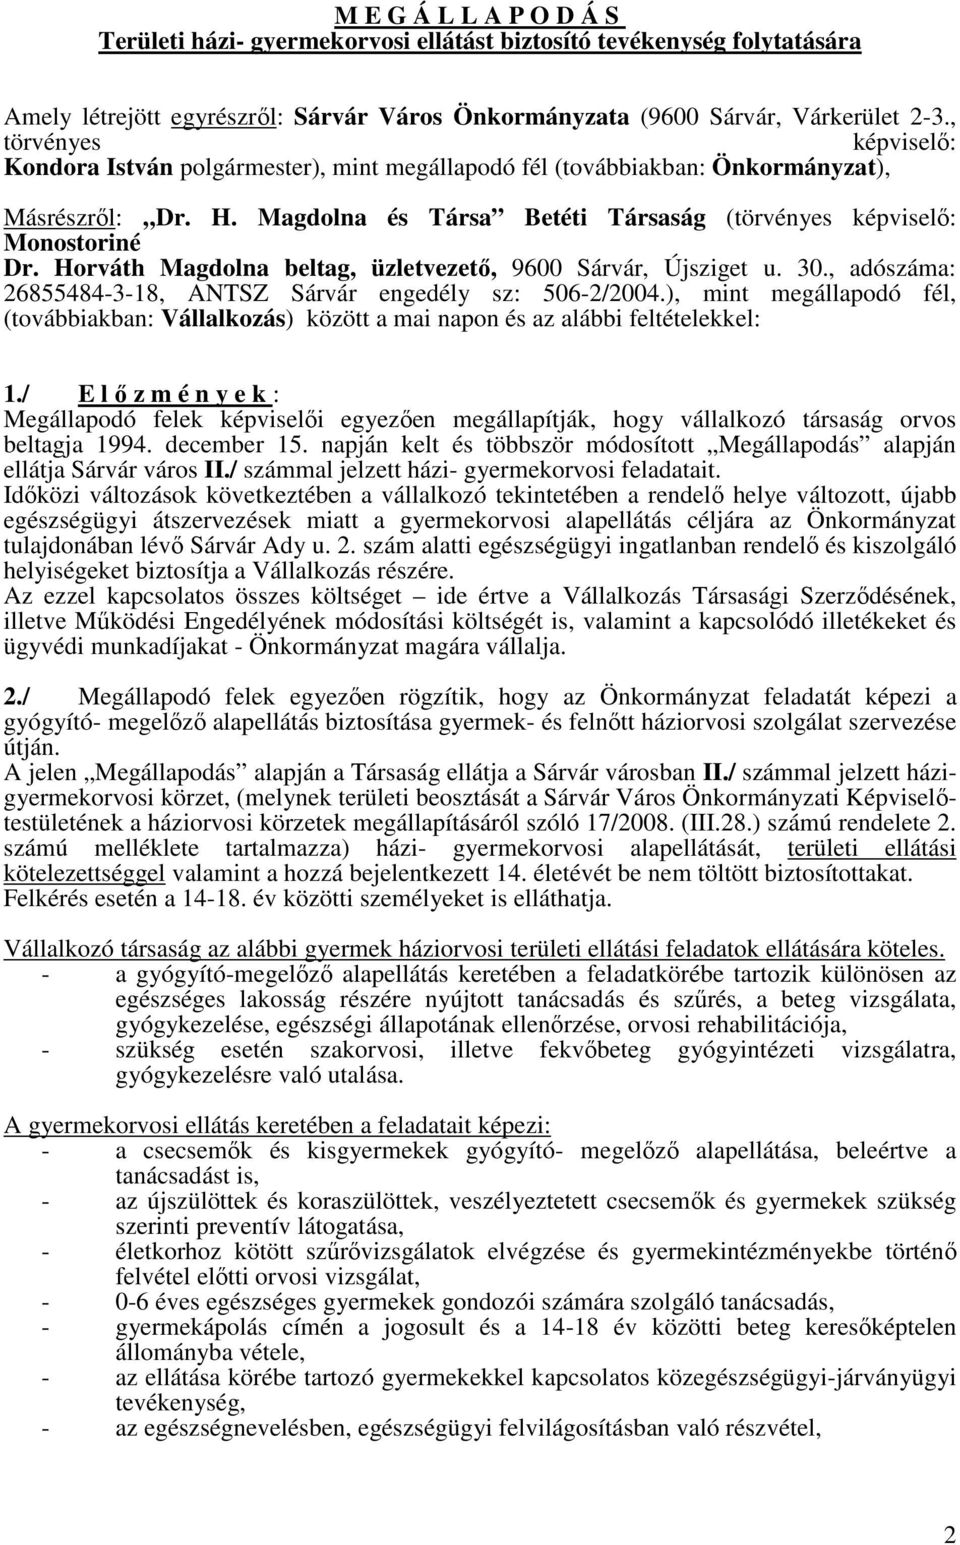 Horváth Magdolna beltag, üzletvezető, 9600 Sárvár, Újsziget u. 30., adószáma: 26855484-3-18, ANTSZ Sárvár engedély sz: 506-2/2004.